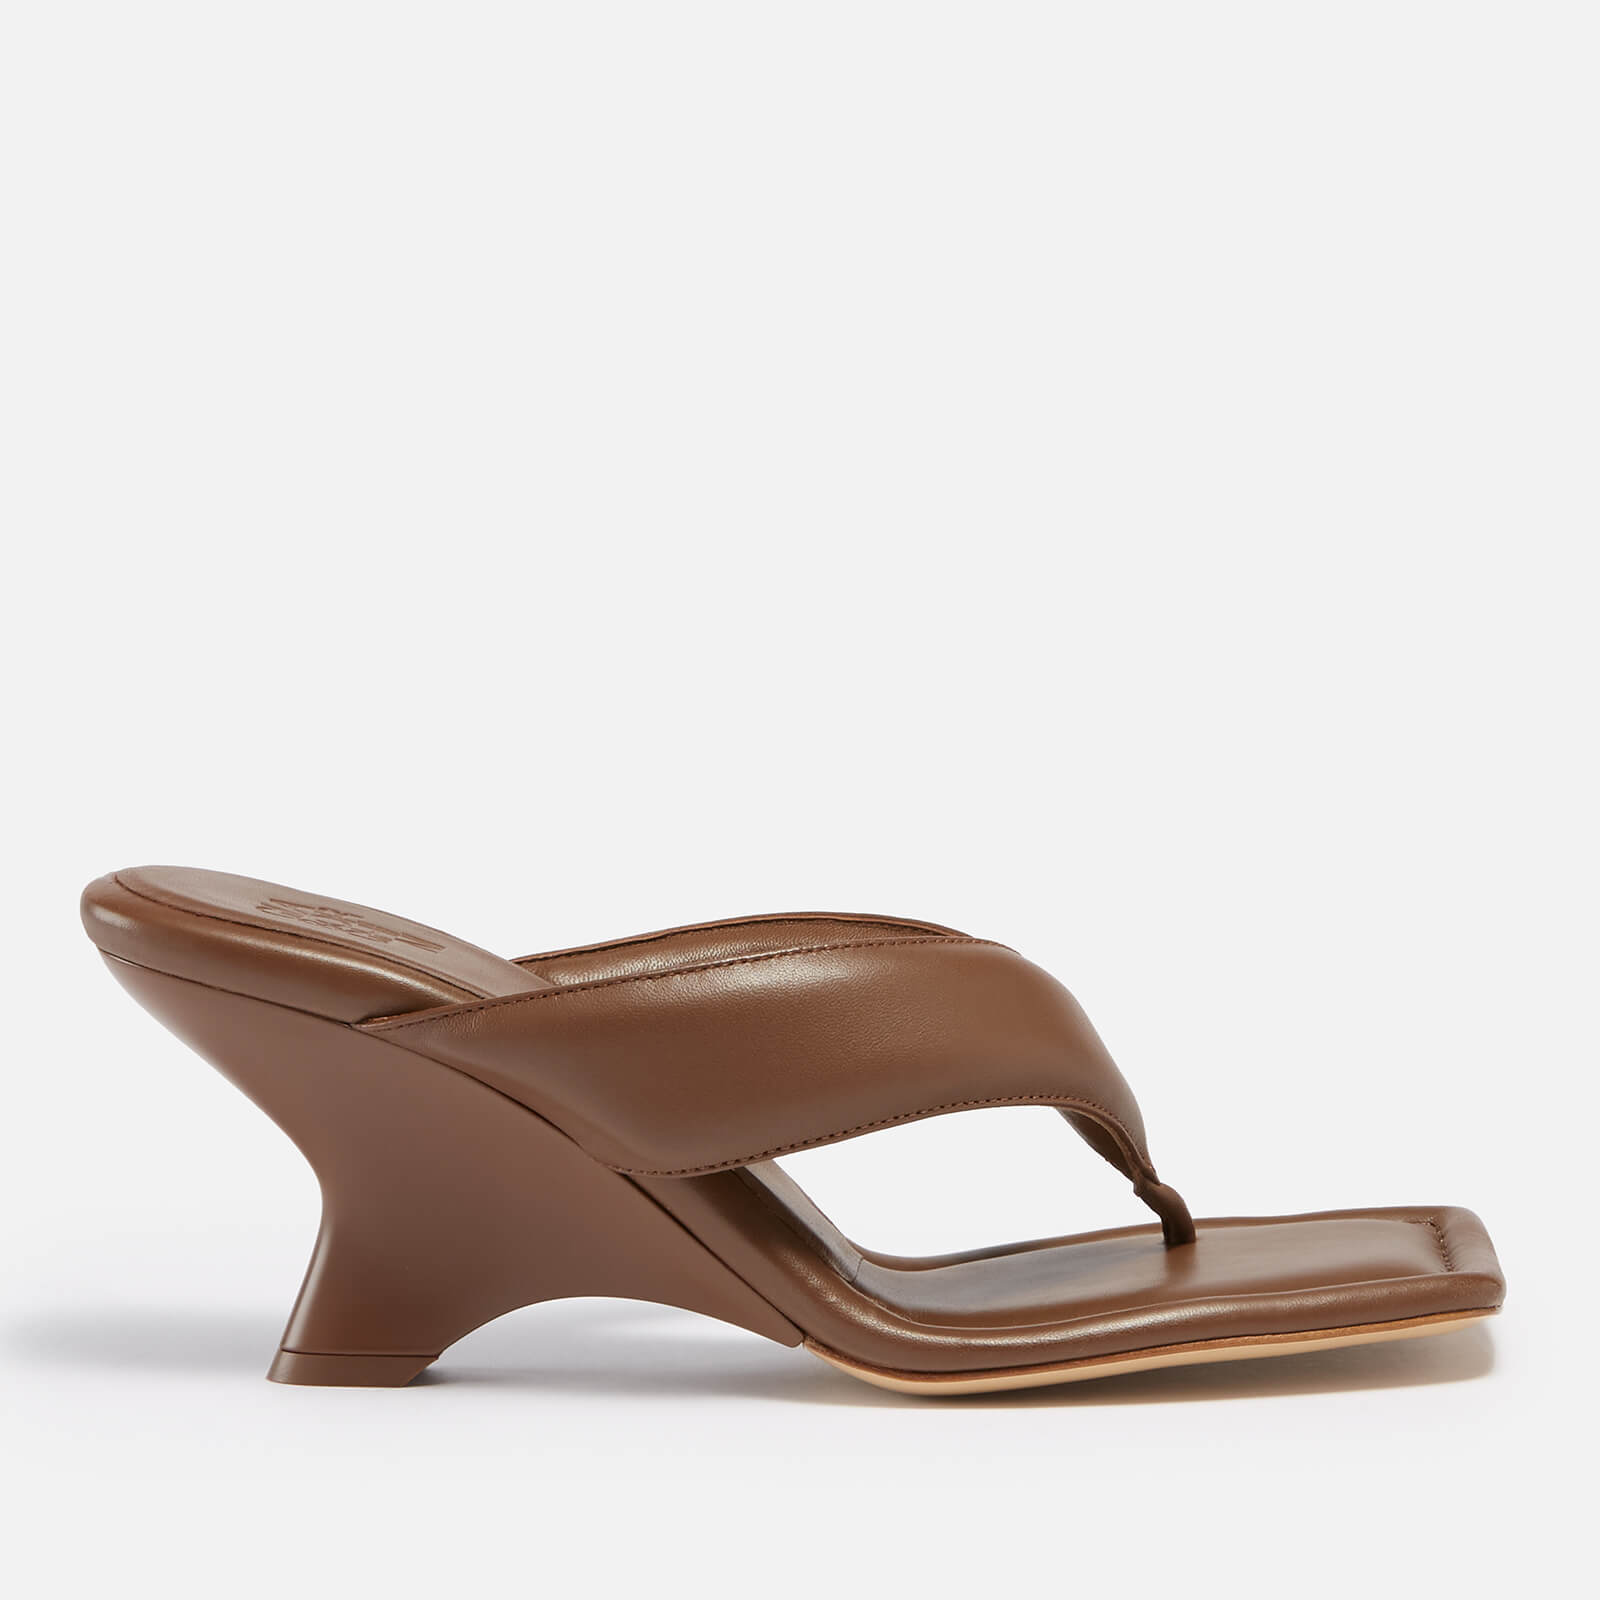 GIA BORGHINI Women's Gia 6 Leather Heeled Sandals - Coffee Brown - IT 36